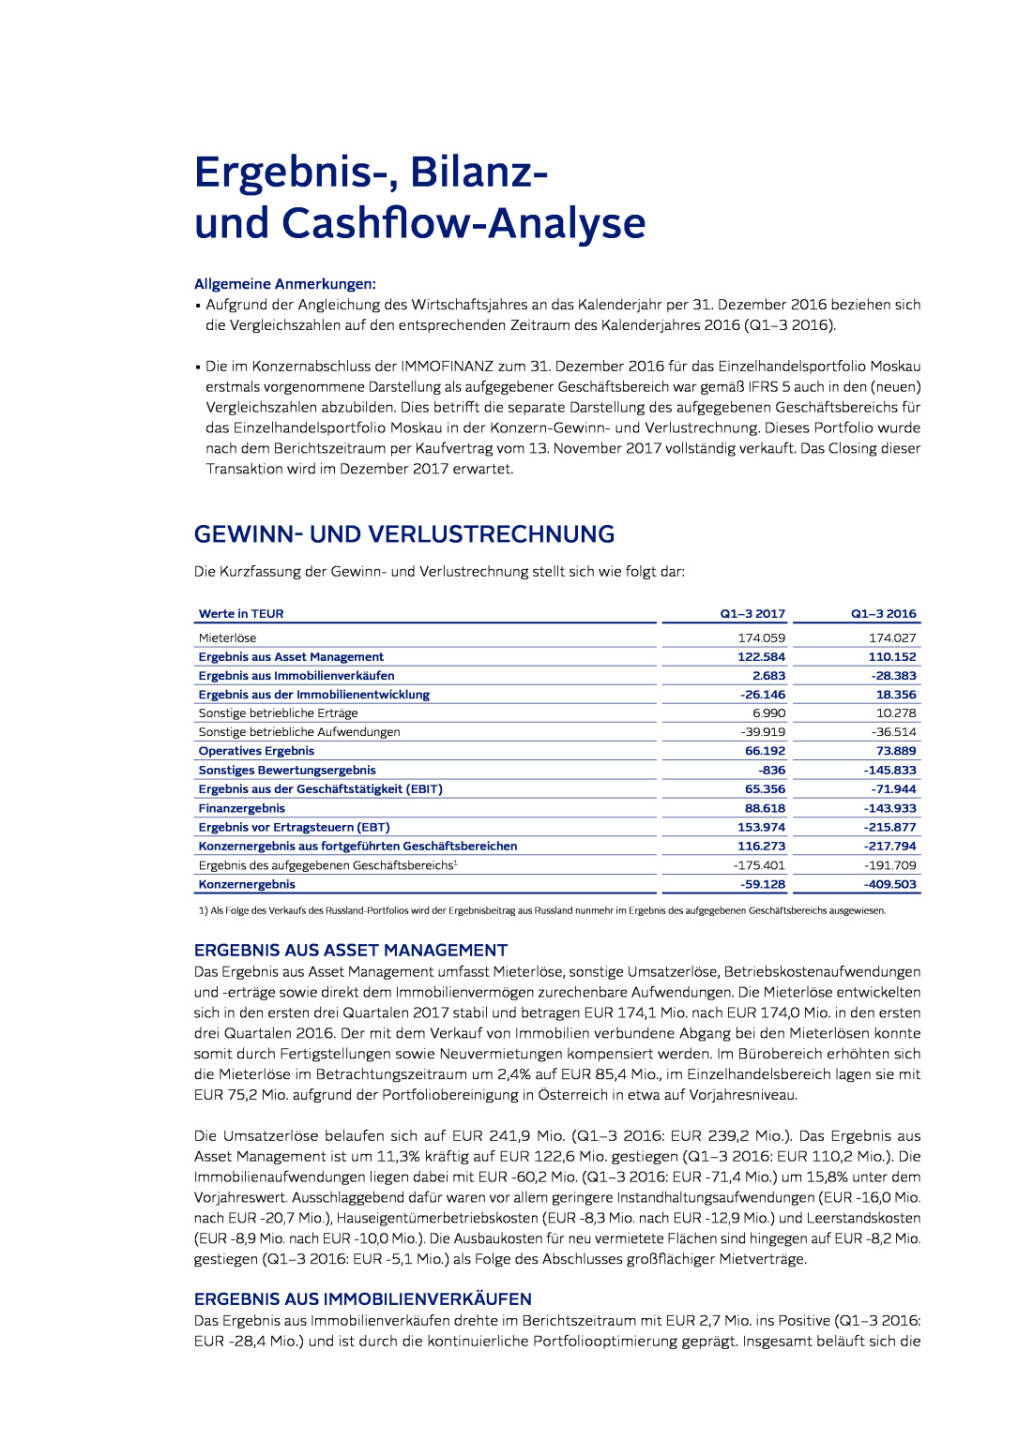 Immofinanz: Ergebnis-, Bilanz- und Cash ow-Analyse, Seite 1/6, komplettes Dokument unter http://boerse-social.com/static/uploads/file_2404_immofinanz_ergebnis-_bilanz-_und_cash_ow-analyse.pdf